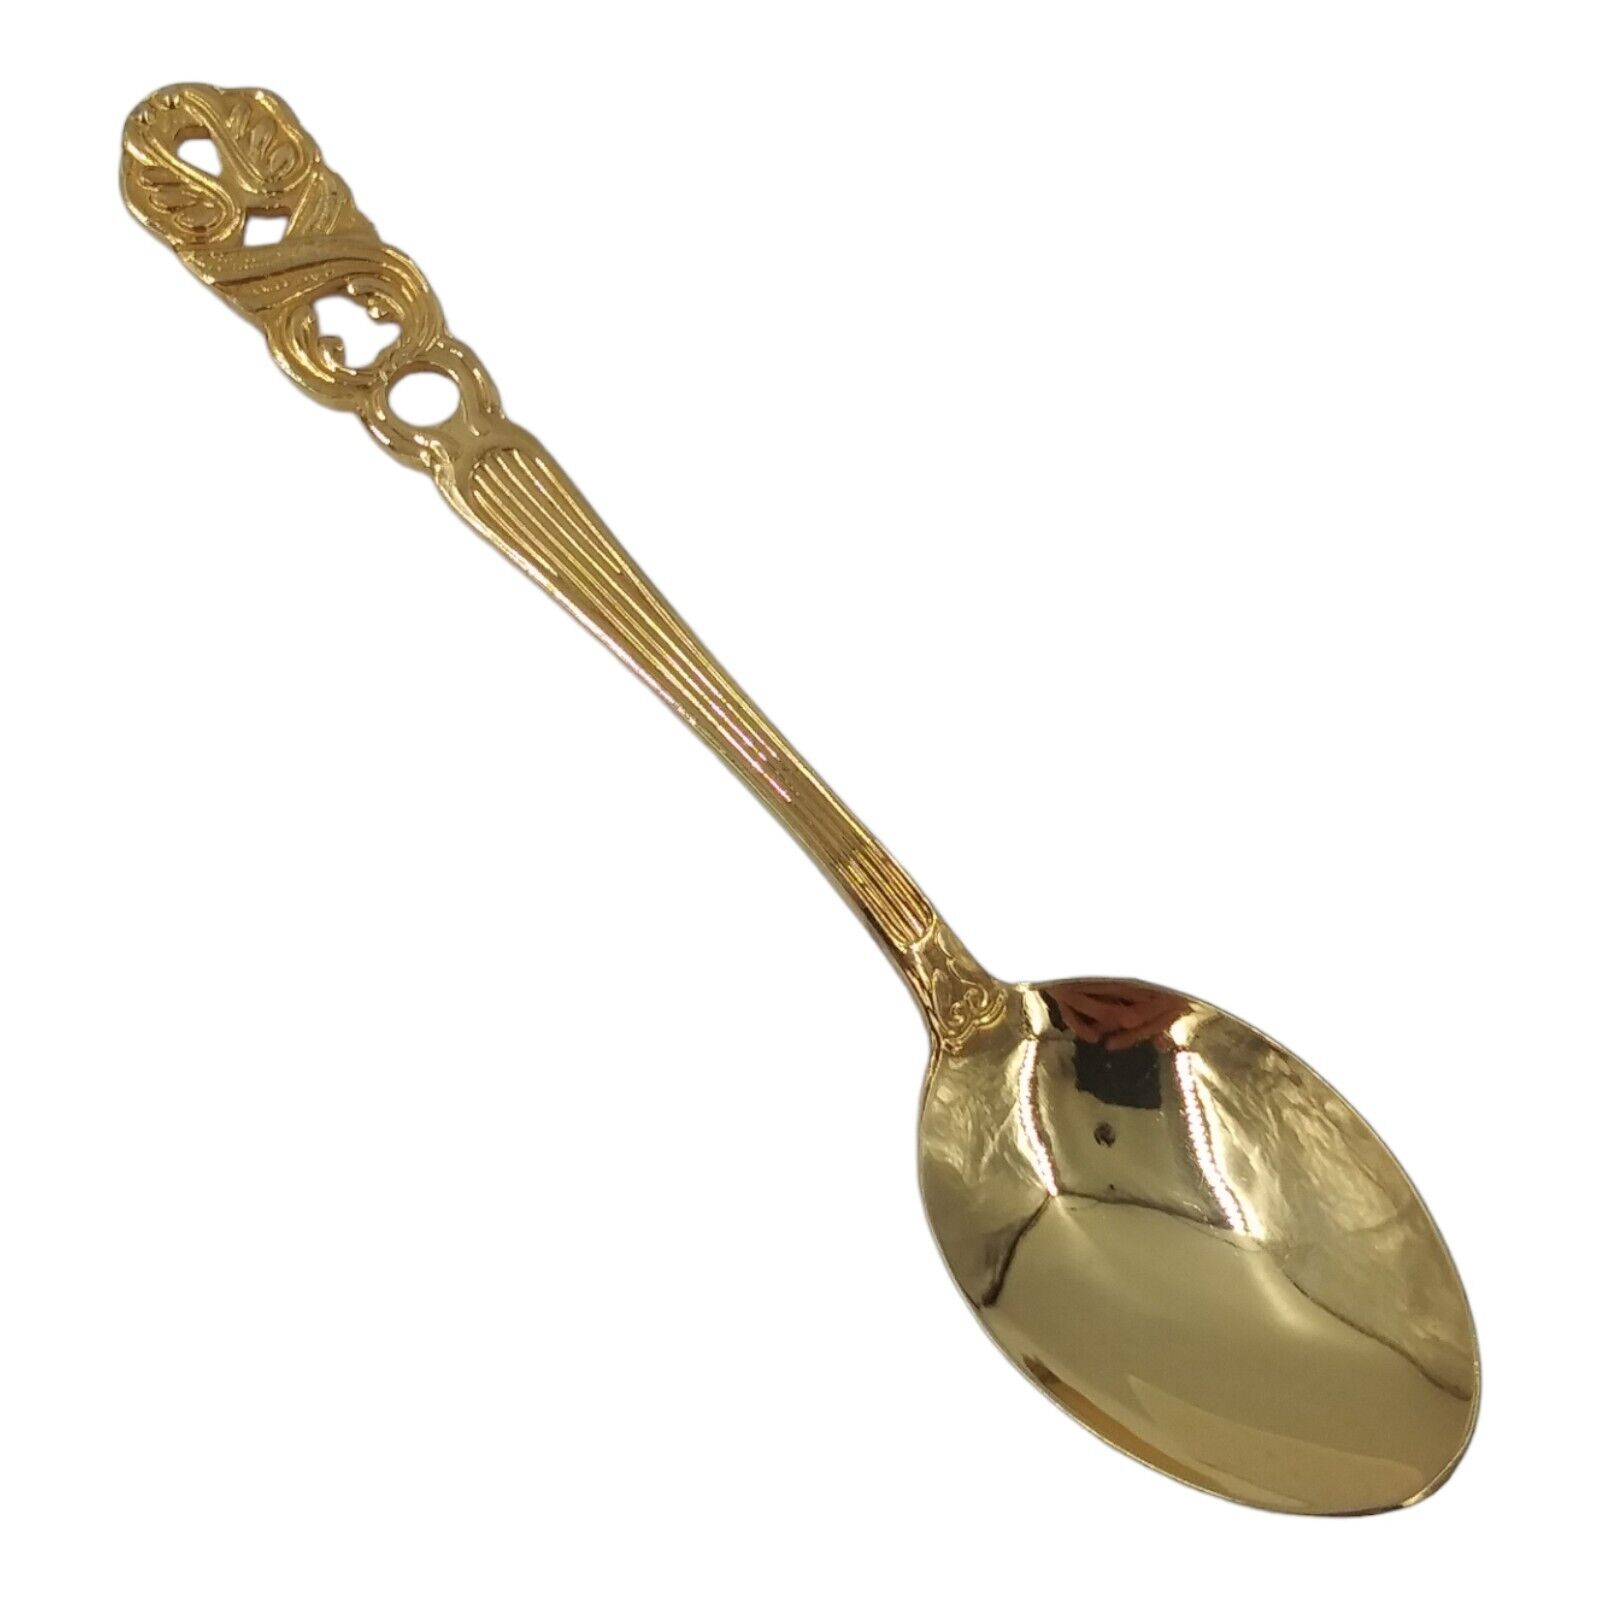 Vintage Pierced Floral Handle Souvenir Spoon Collectible Gold-tone